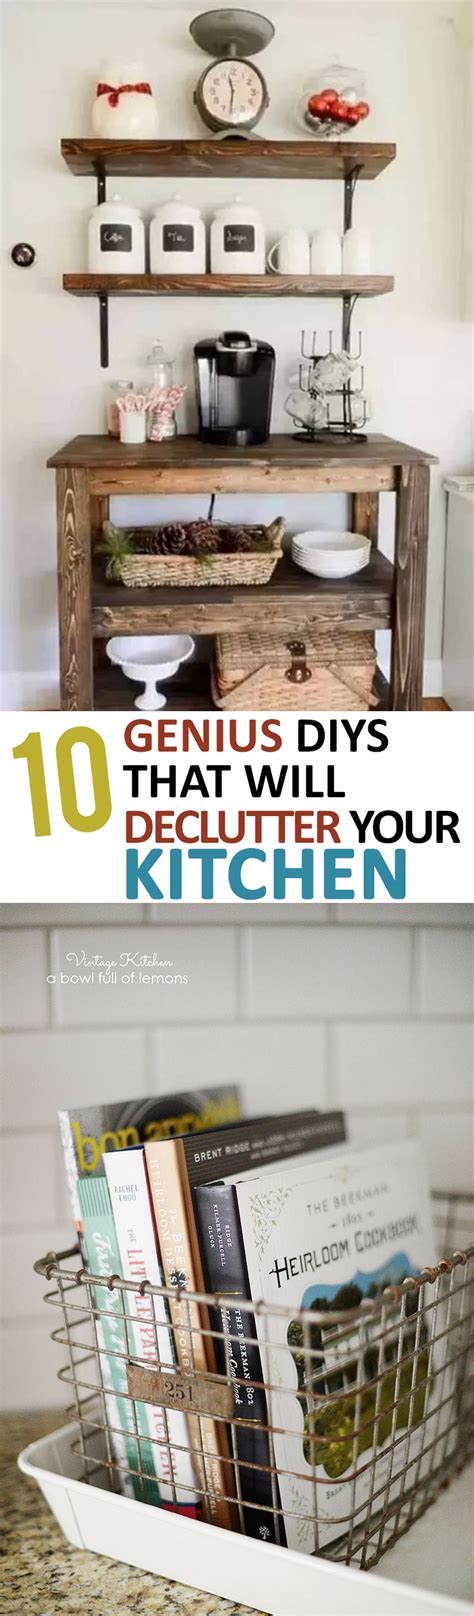 genius diys   declutter  kitchen